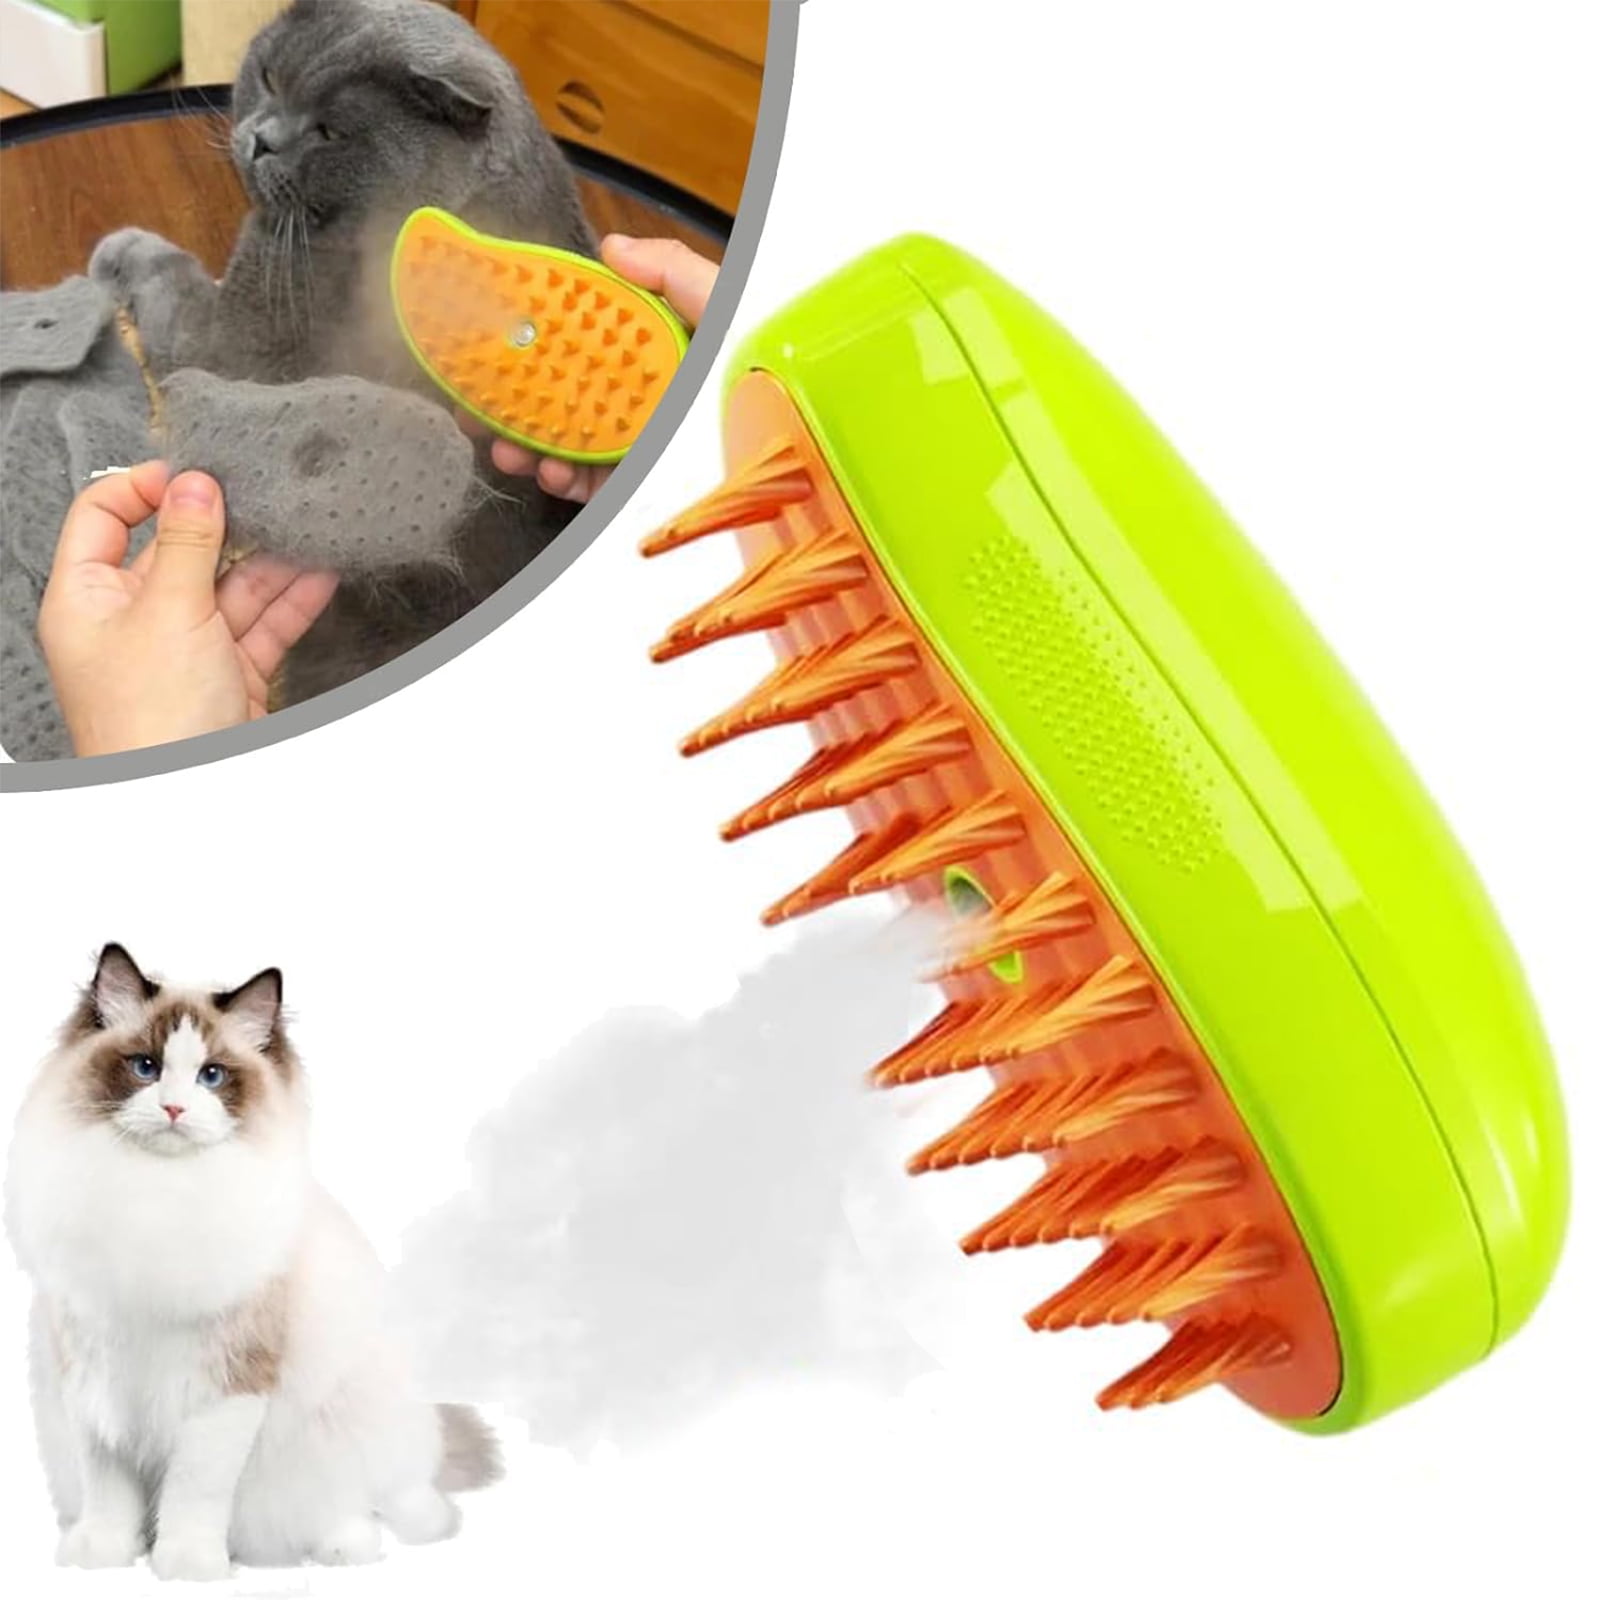 Steamy Cat Brush - 3 In1 Cat Steamy Brush, Self Cleaning Steam Cat